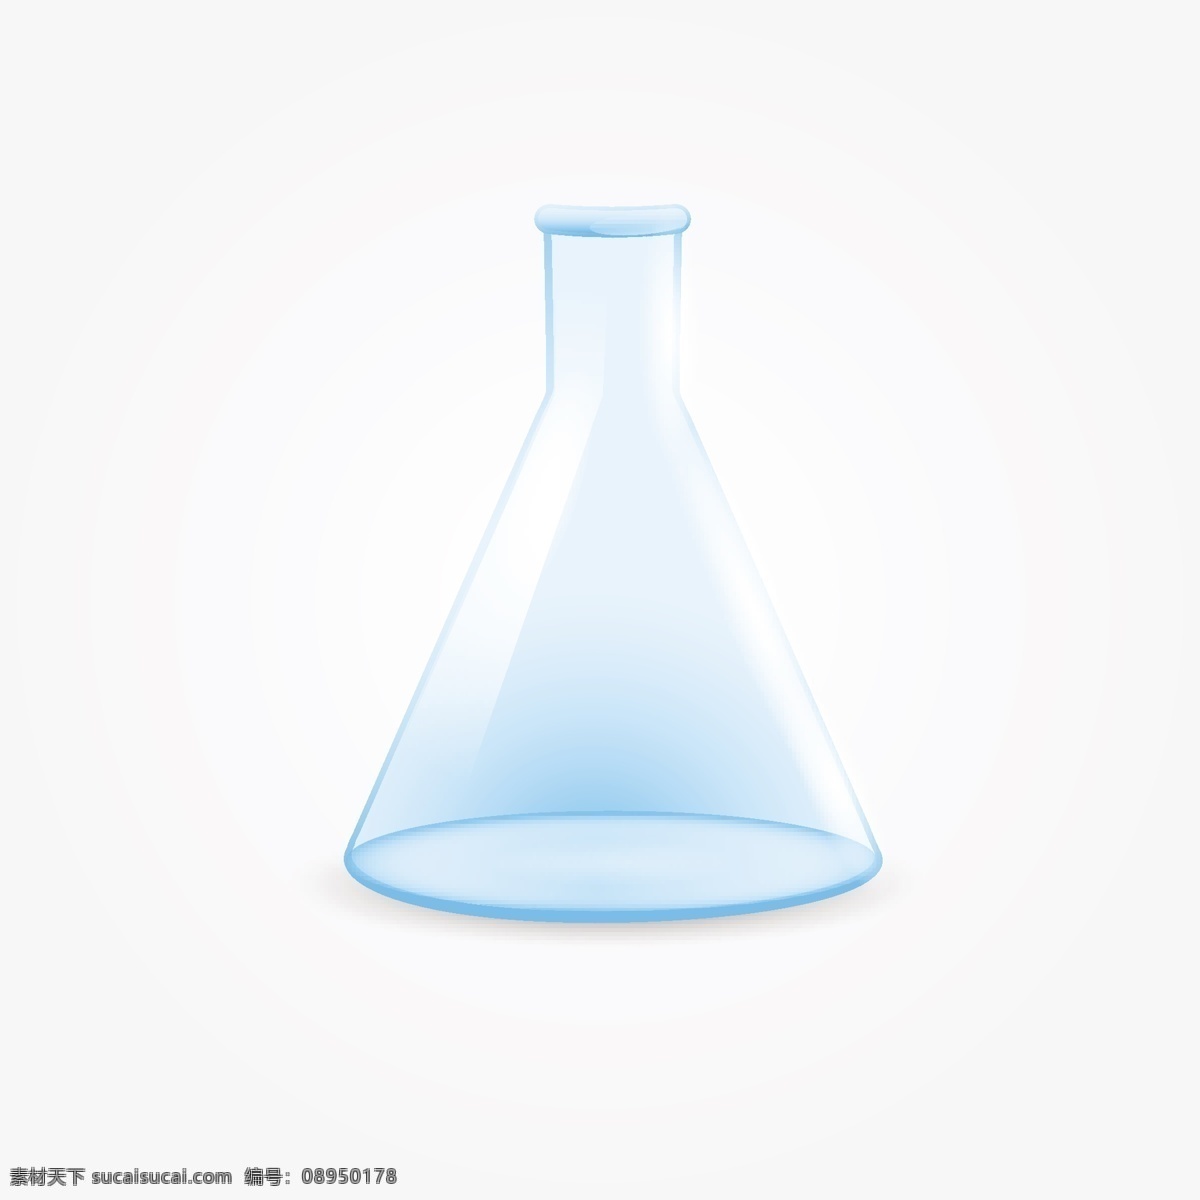 实验室 玻璃 隔离 医学 科学 化学 插图 白 化工 检验 生物 分析 液管 试管 烧杯 烧瓶 现实的 孤立的 白色